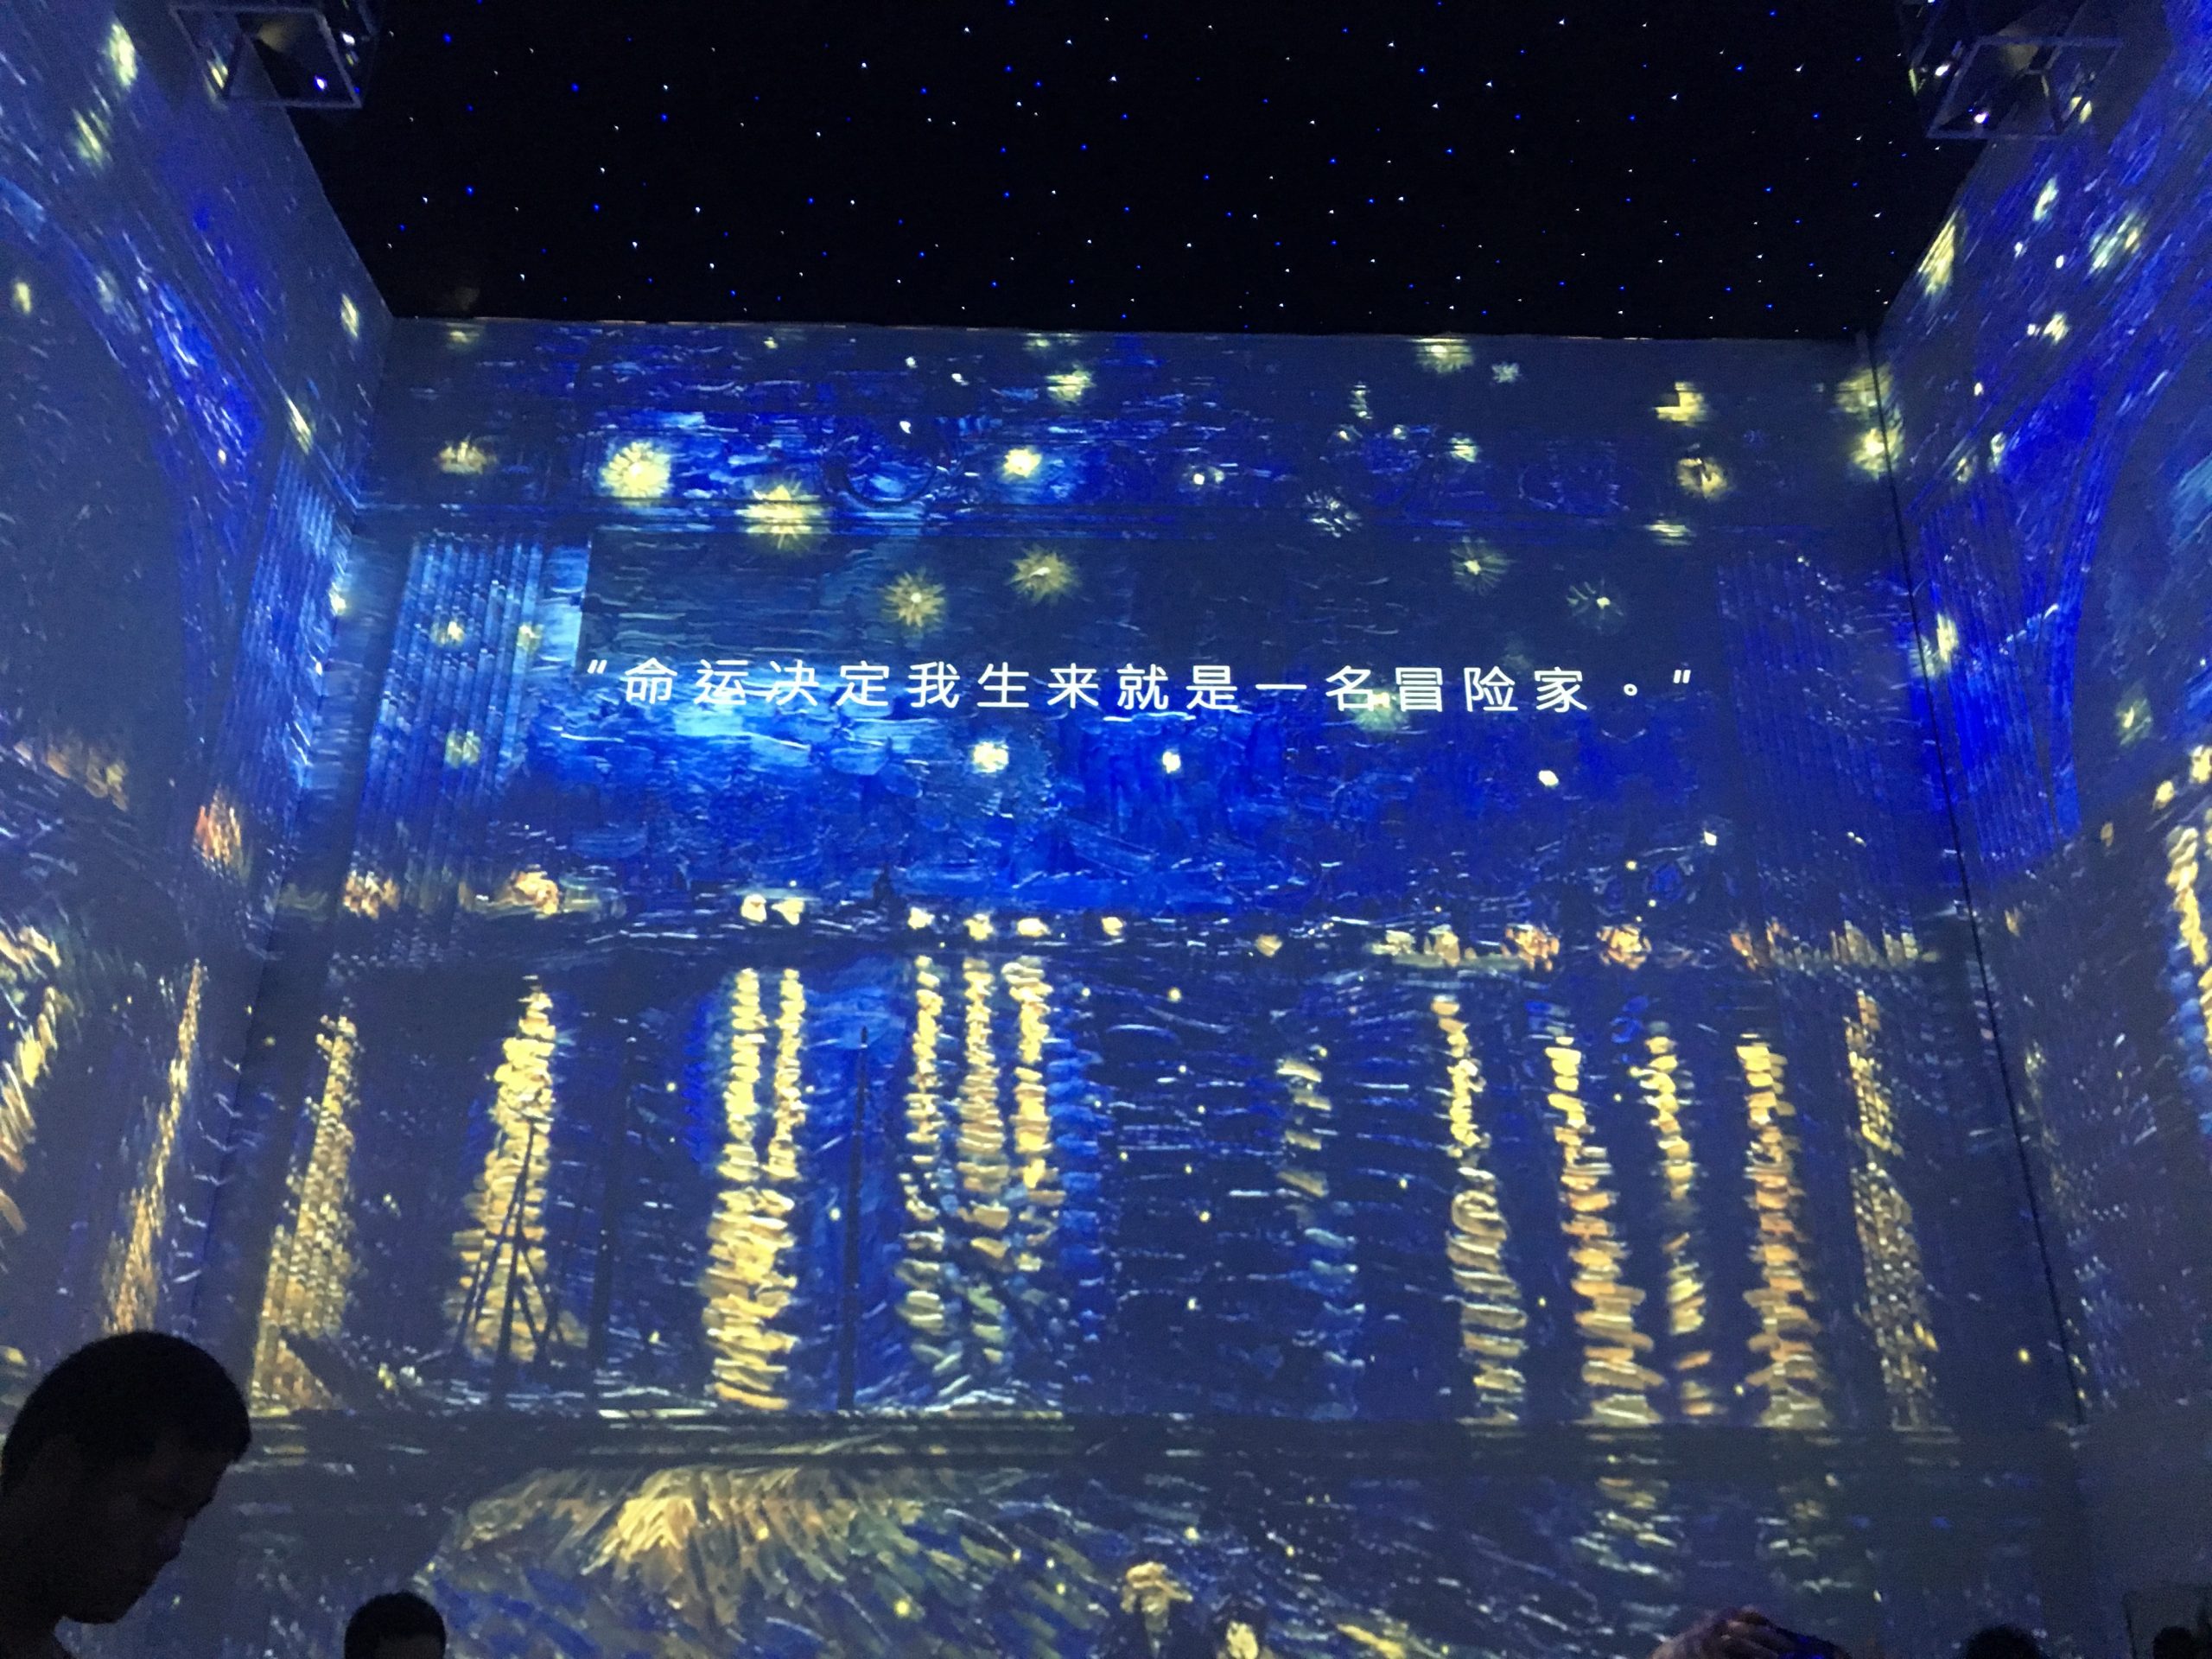 【2019年7月】墨境轩组织学生在中国国家博物馆看梵高展 活动 第3张